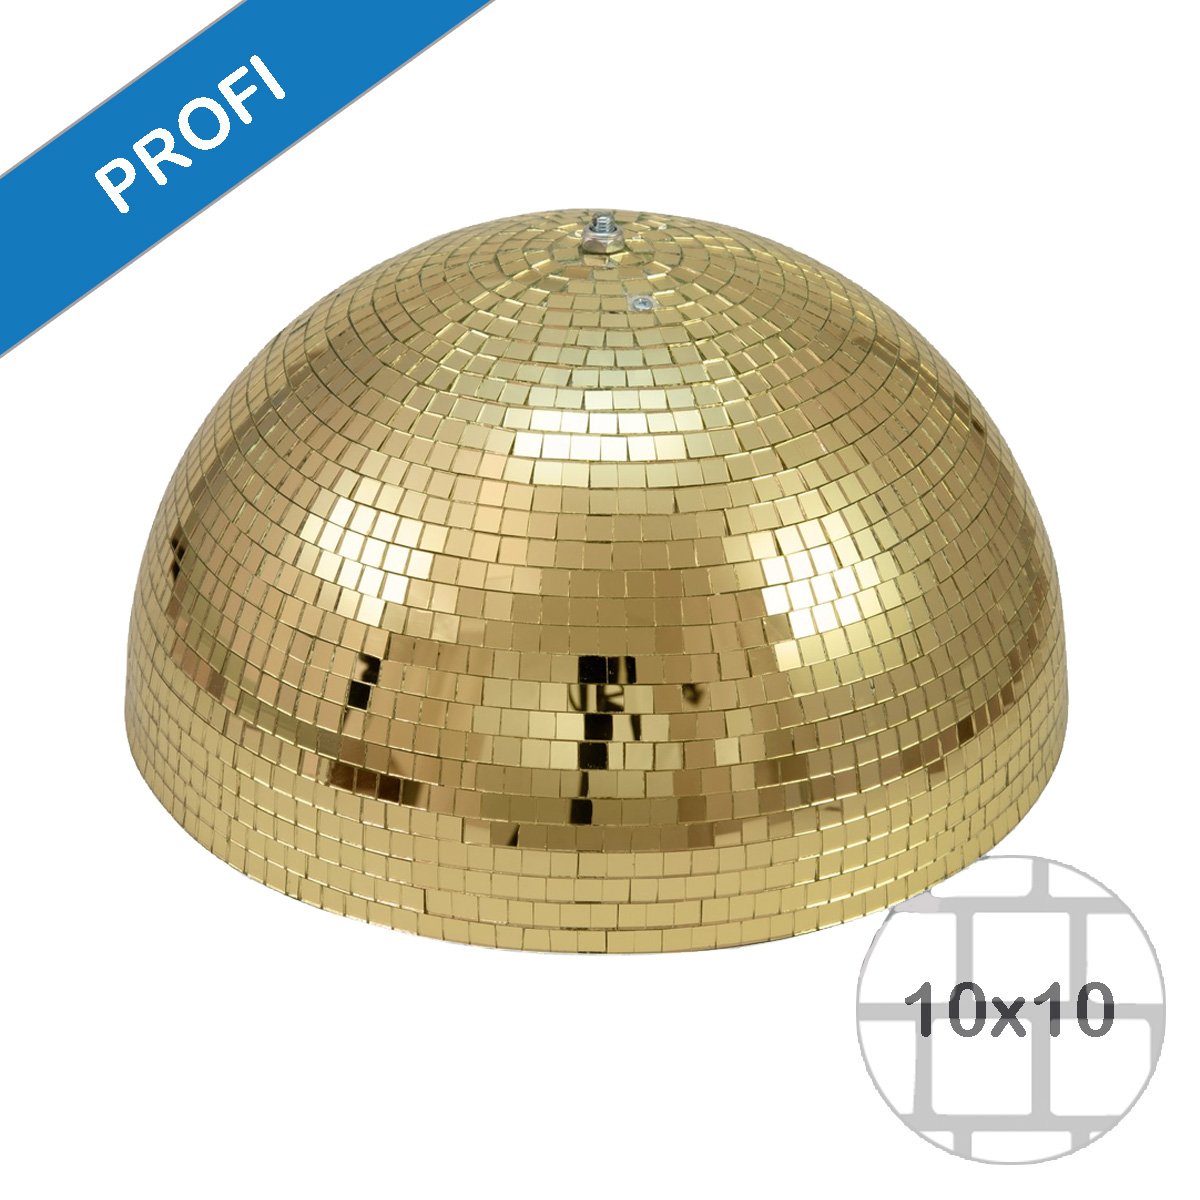 Spiegelkugel halb gold 40cm - für Deckenmontage - Diskokugel Echtglas - 10x10mm Spiegel - PROFI